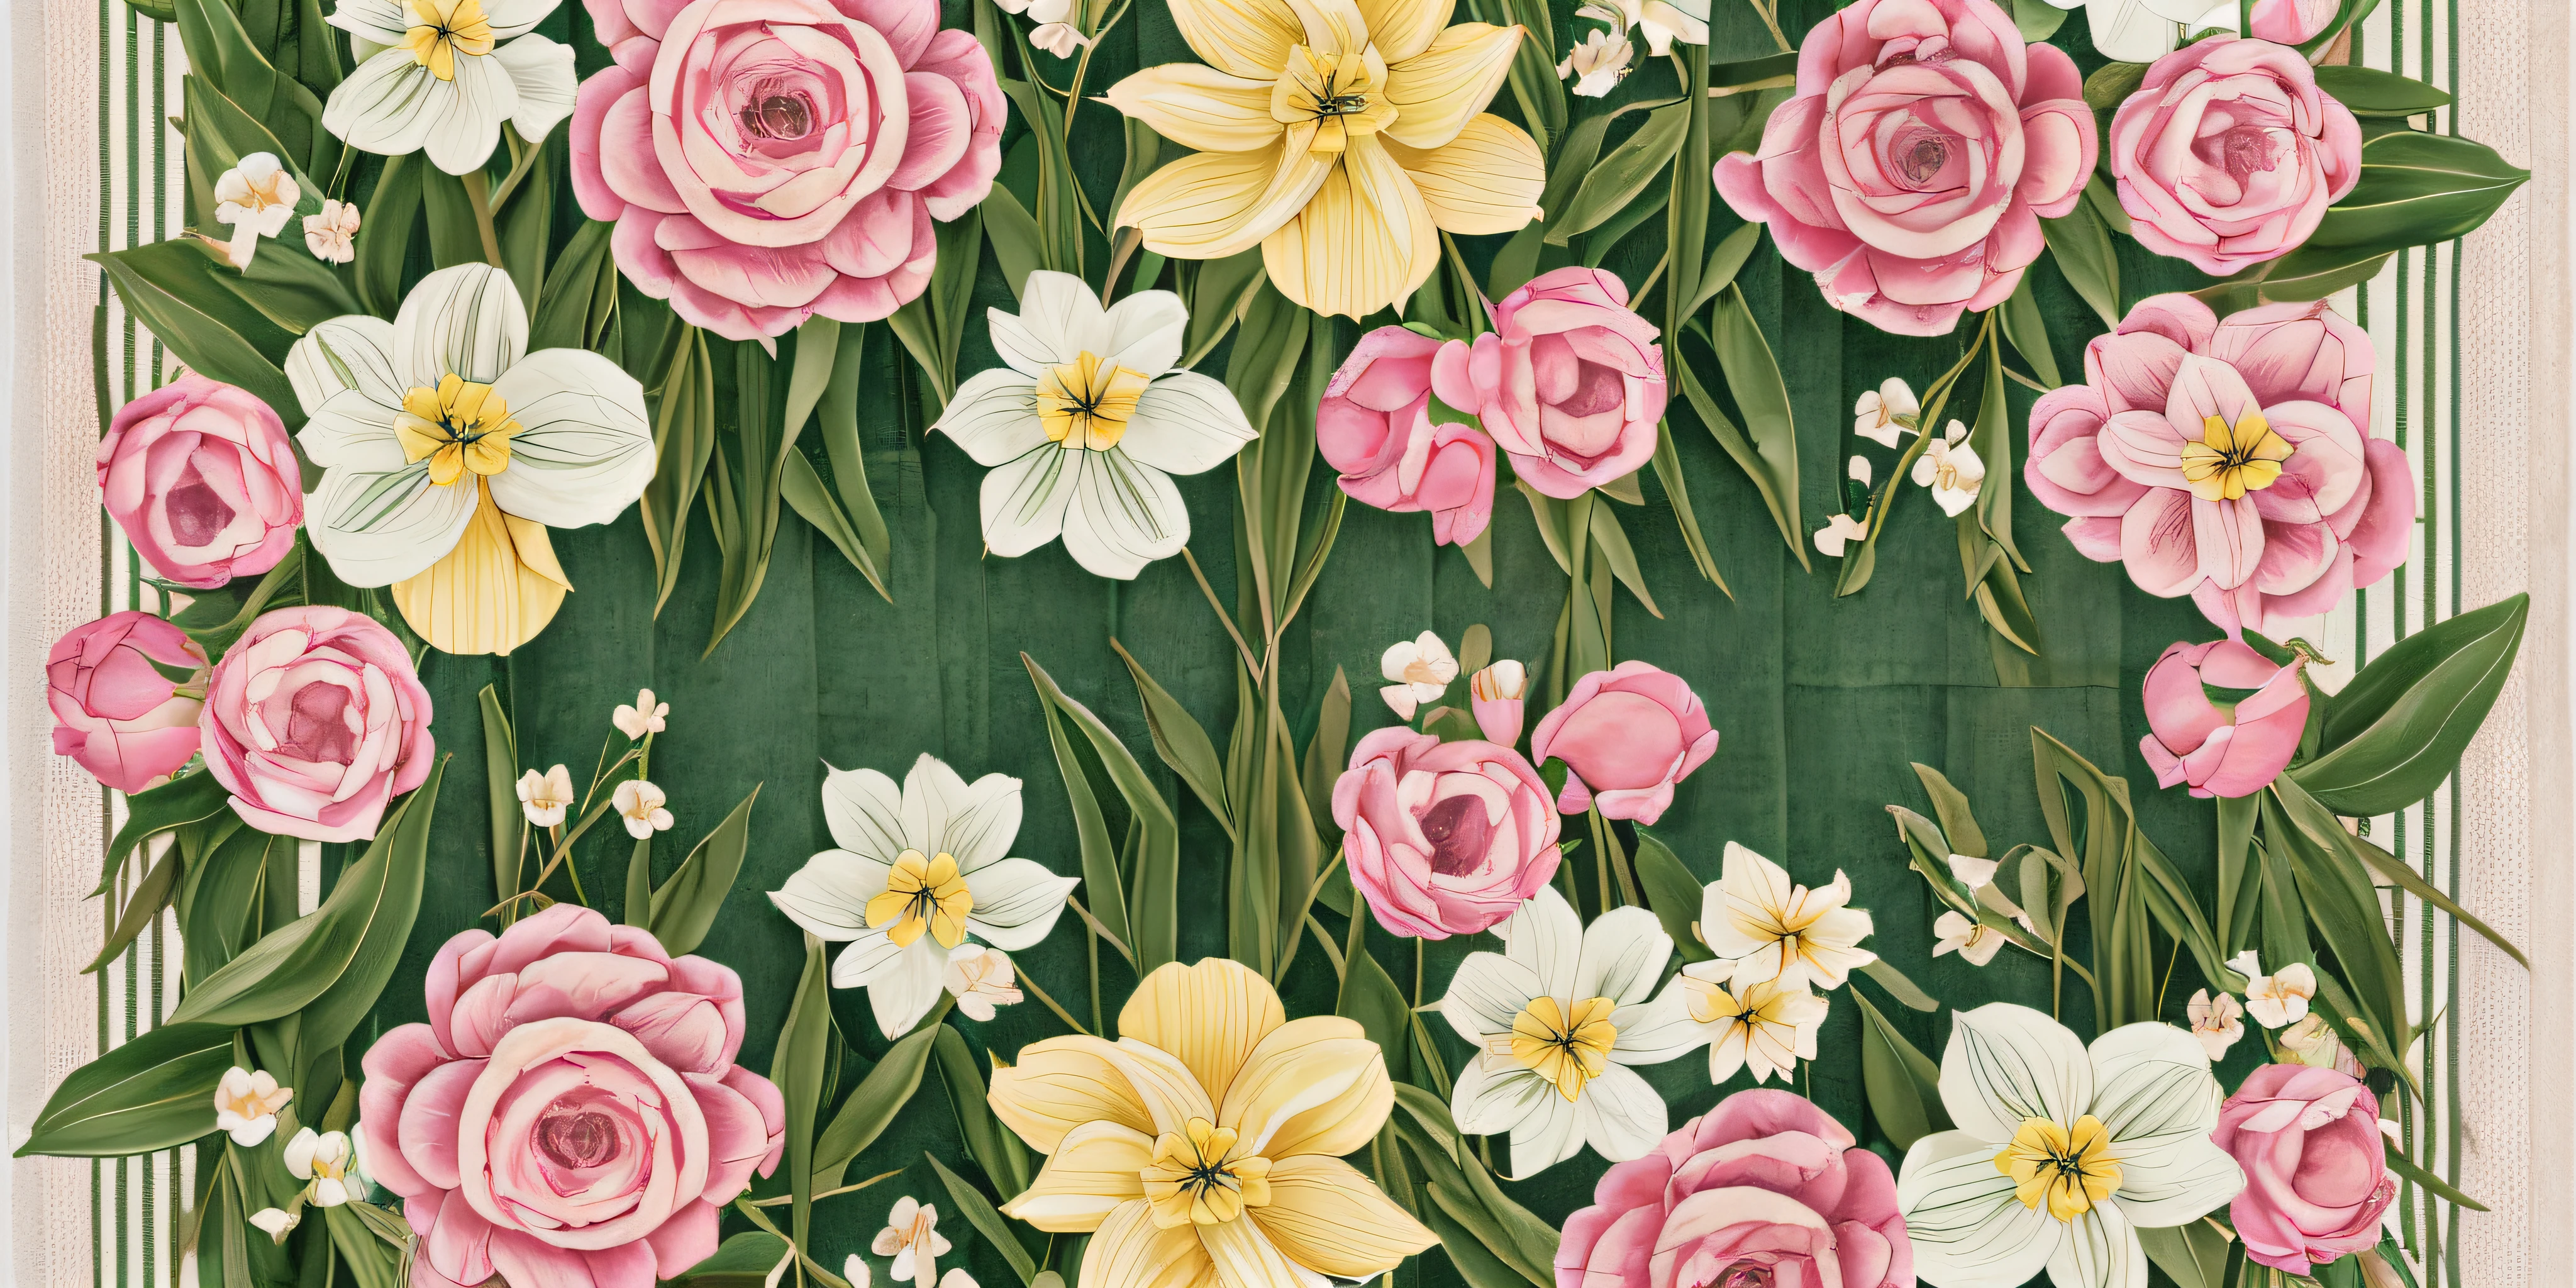 Ilustre um 16:9 composição apresentando um bar visualmente marcante feito de rosas e tulipas, hortênsias, e narcisos, posicionado horizontalmente para se assemelhar a uma faixa ornamentada em uma toalha felpuda --auto --s2